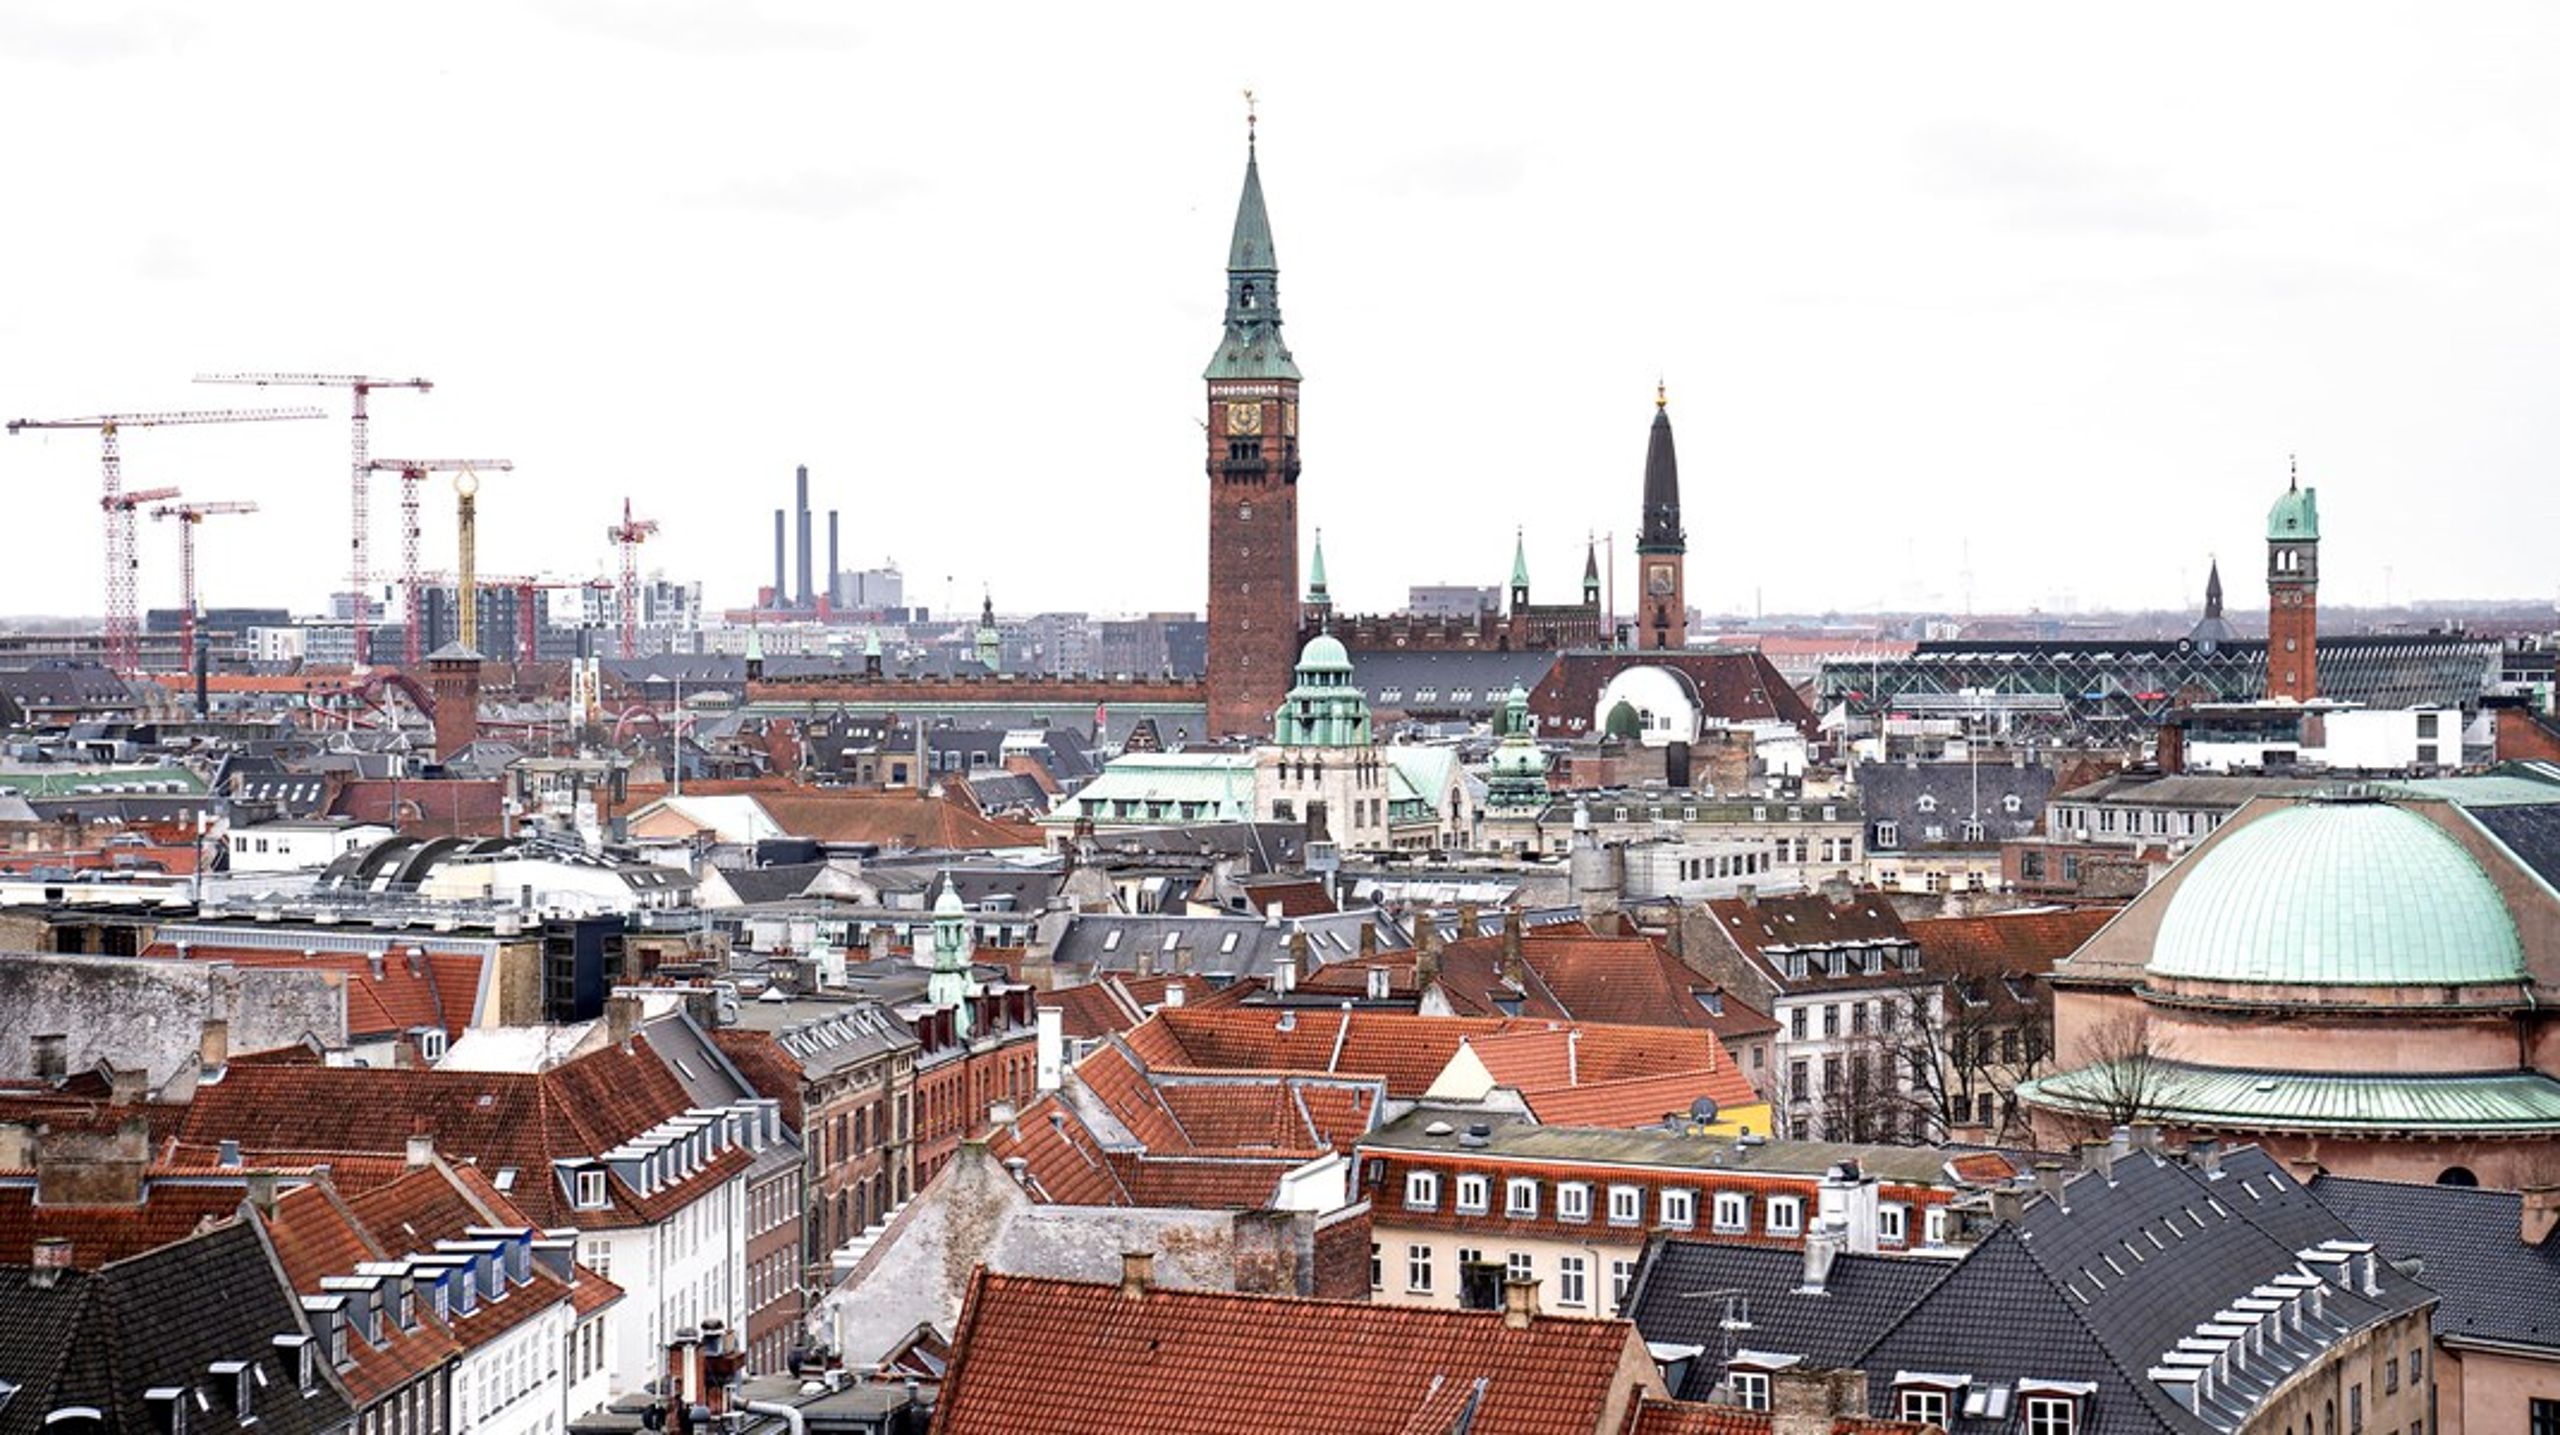 Københavns Kommune skal nedsætte en klimafond, som finansieres ved, at der årligt afsættes en procentdel af kommunens budget, som skal gå til grønne og bæredygtige initiativer og projekter, skriver de fire kandidater.